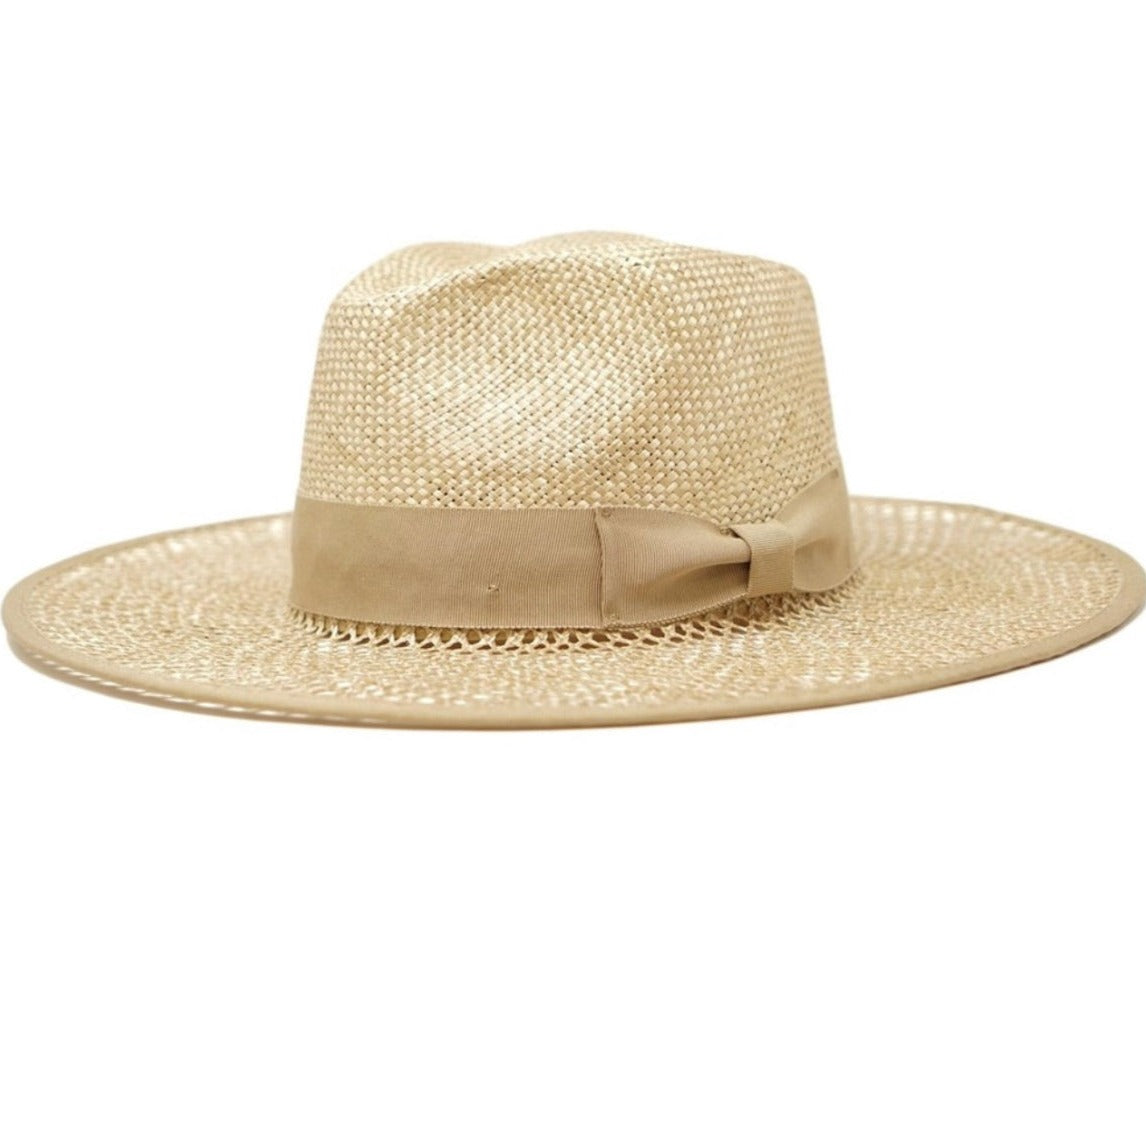 Santiago Straw Hat